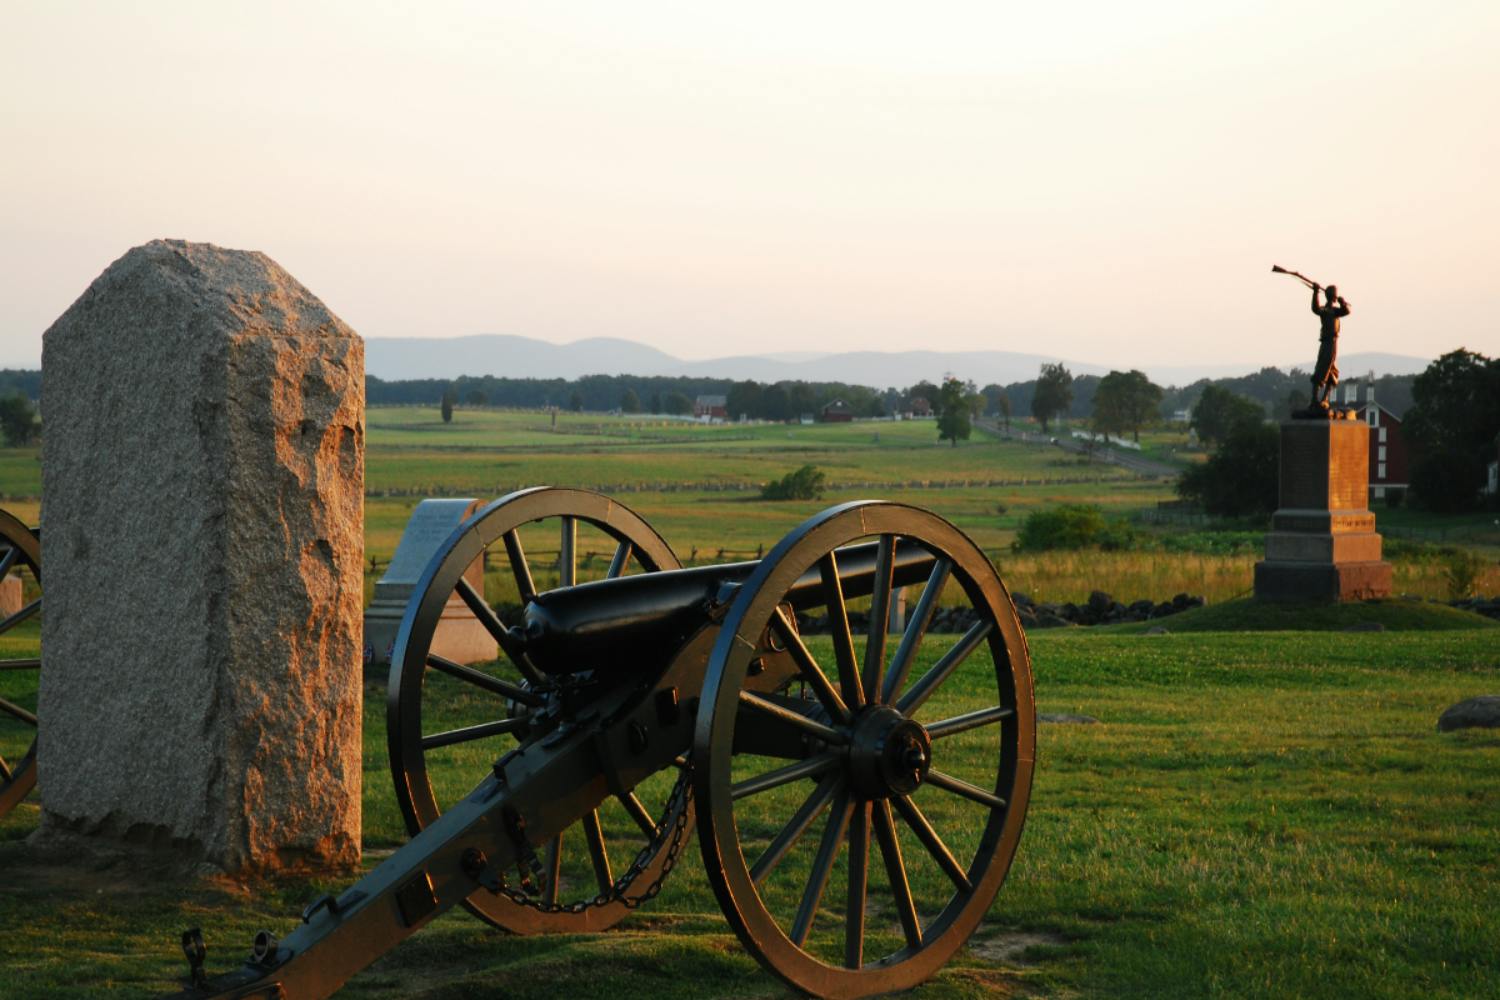 Excursão autoguiada com tema fantasma em Gettysburg